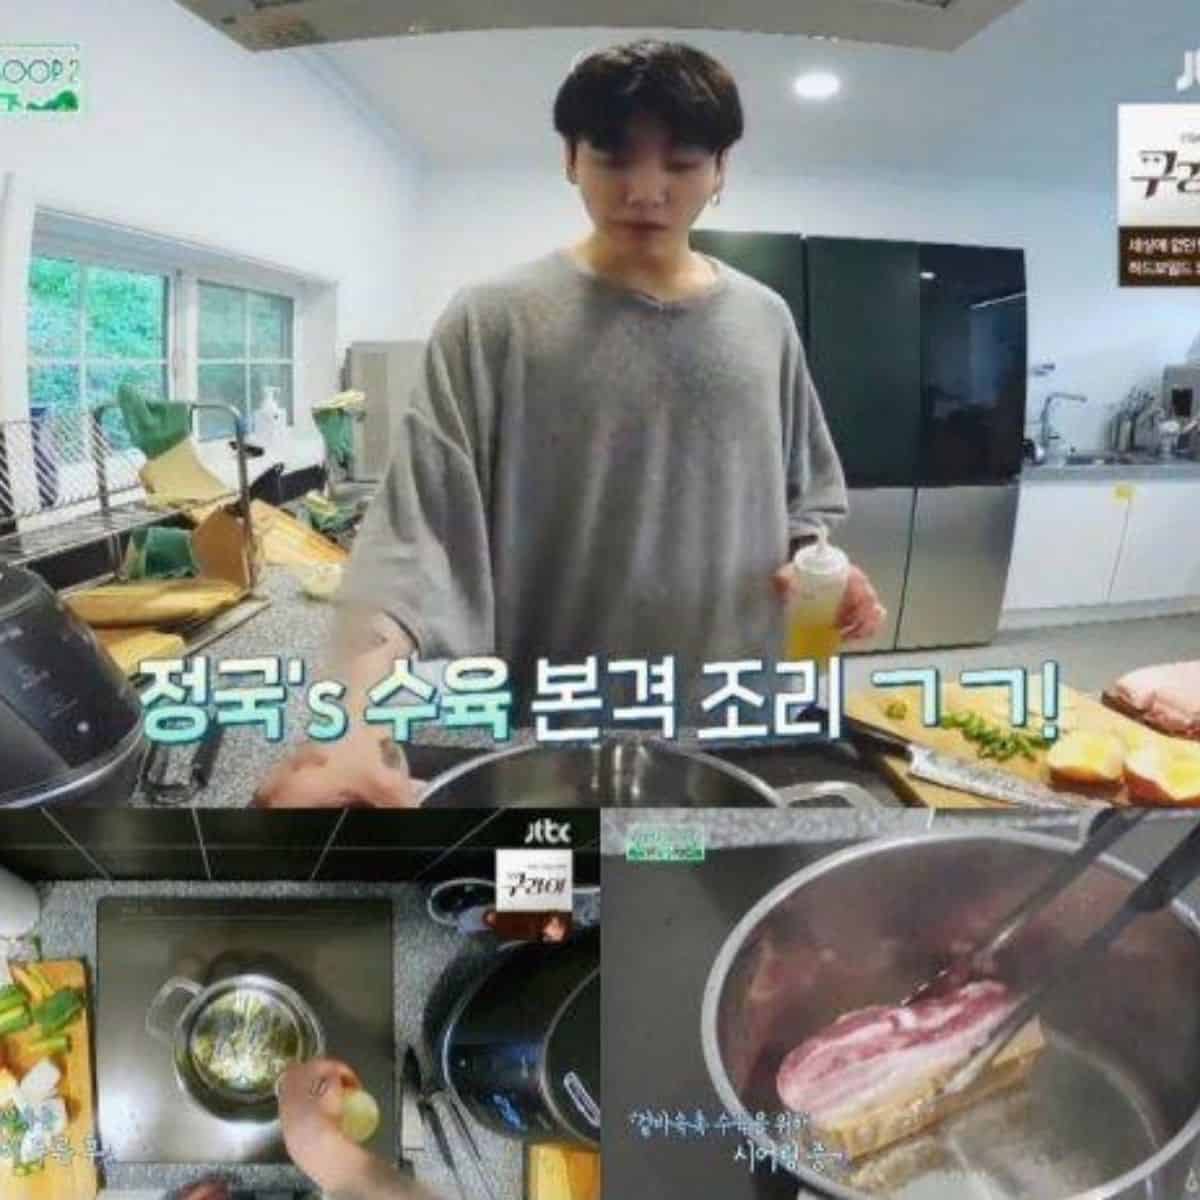 Jungkook BTS cooking Samgyeopsal